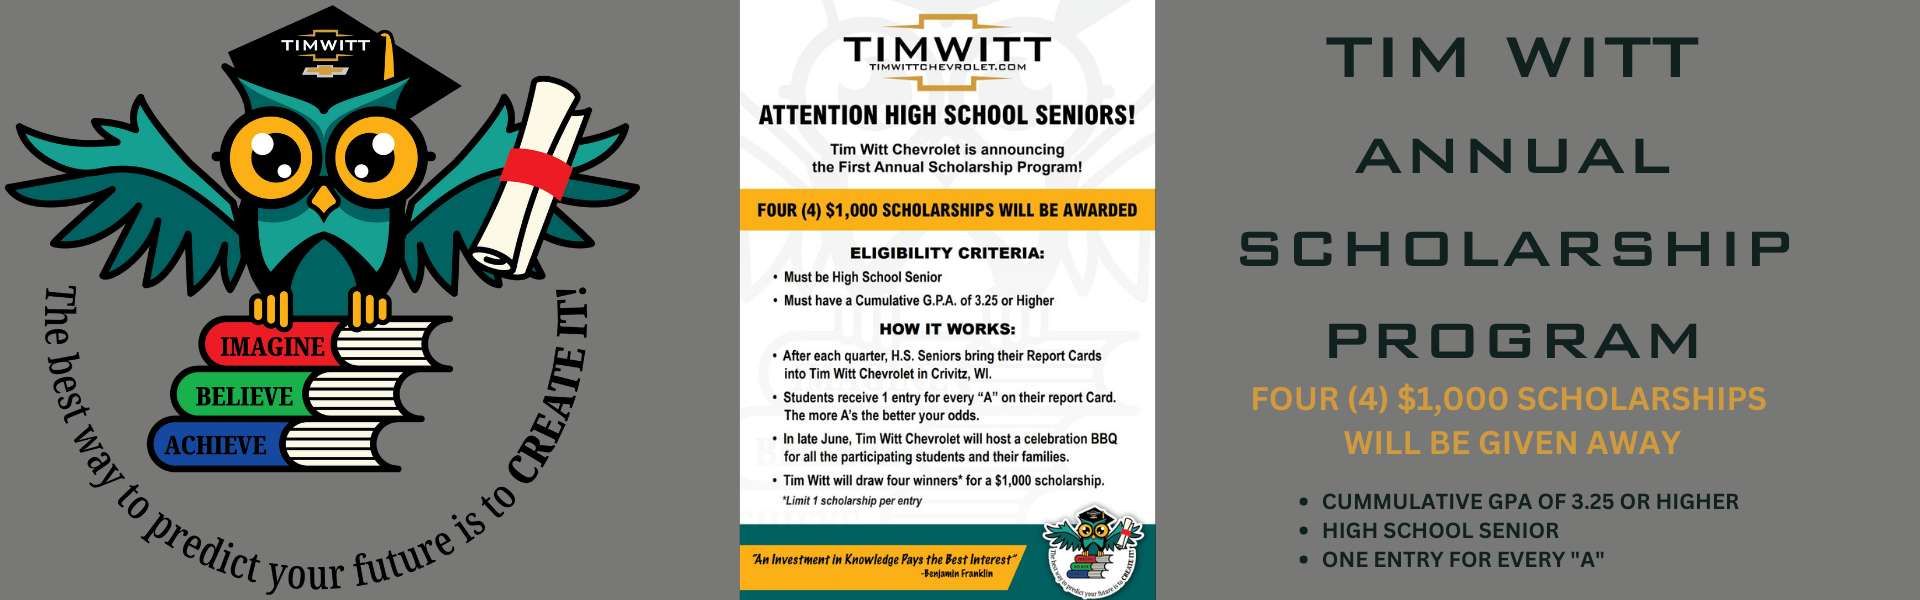 Tim Witt Scholarship Program